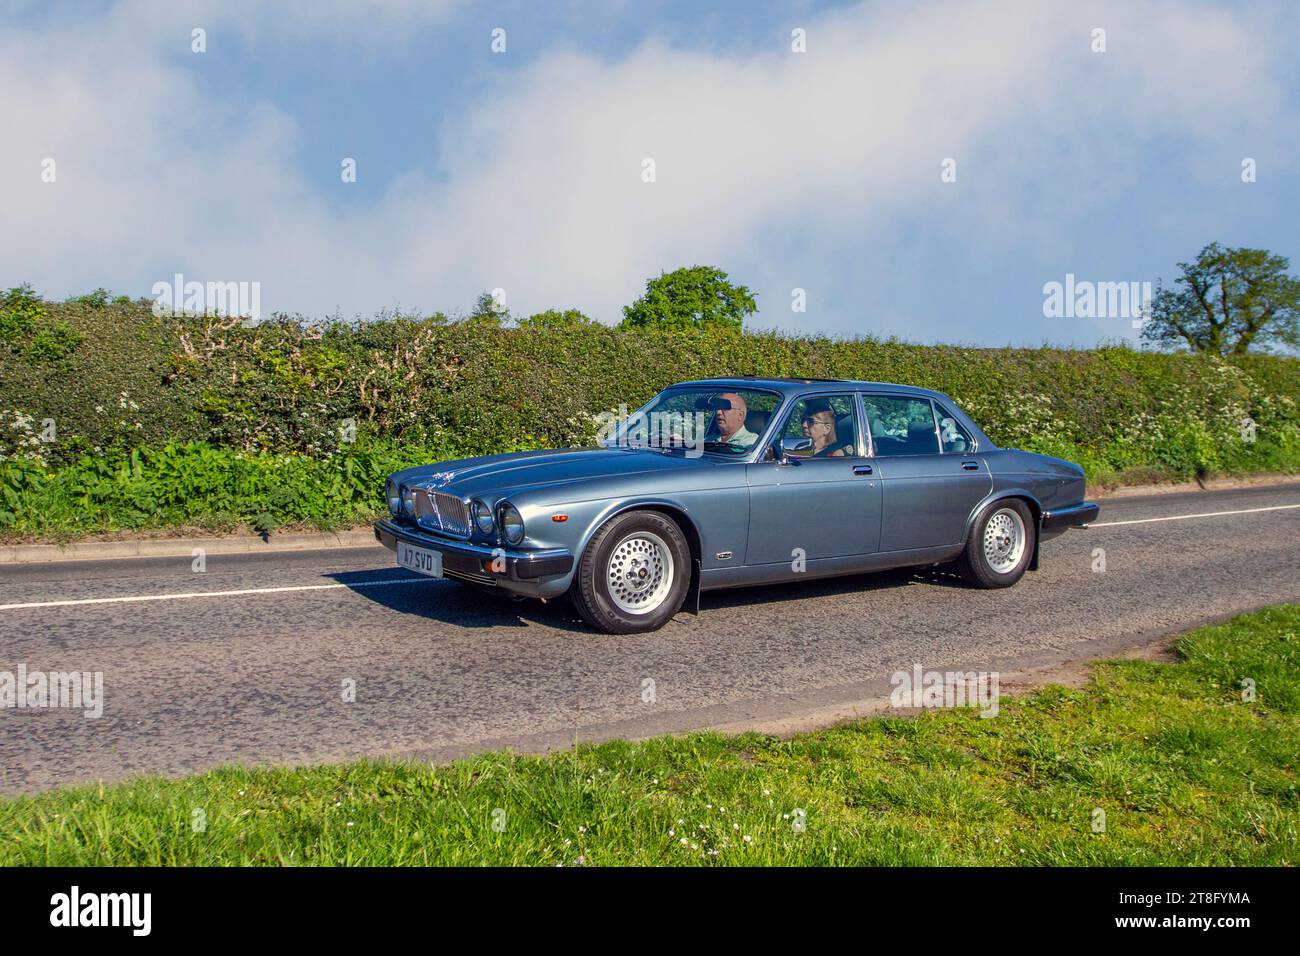 1986 80er Jahre britischer Jaguar Sovereign 4,2 Auto; Vintage, restaurierte britische klassische Motoren, Autosammler, Motorenfreunde und historische Veteranen, die in Cheshire, Großbritannien, reisen Stockfoto